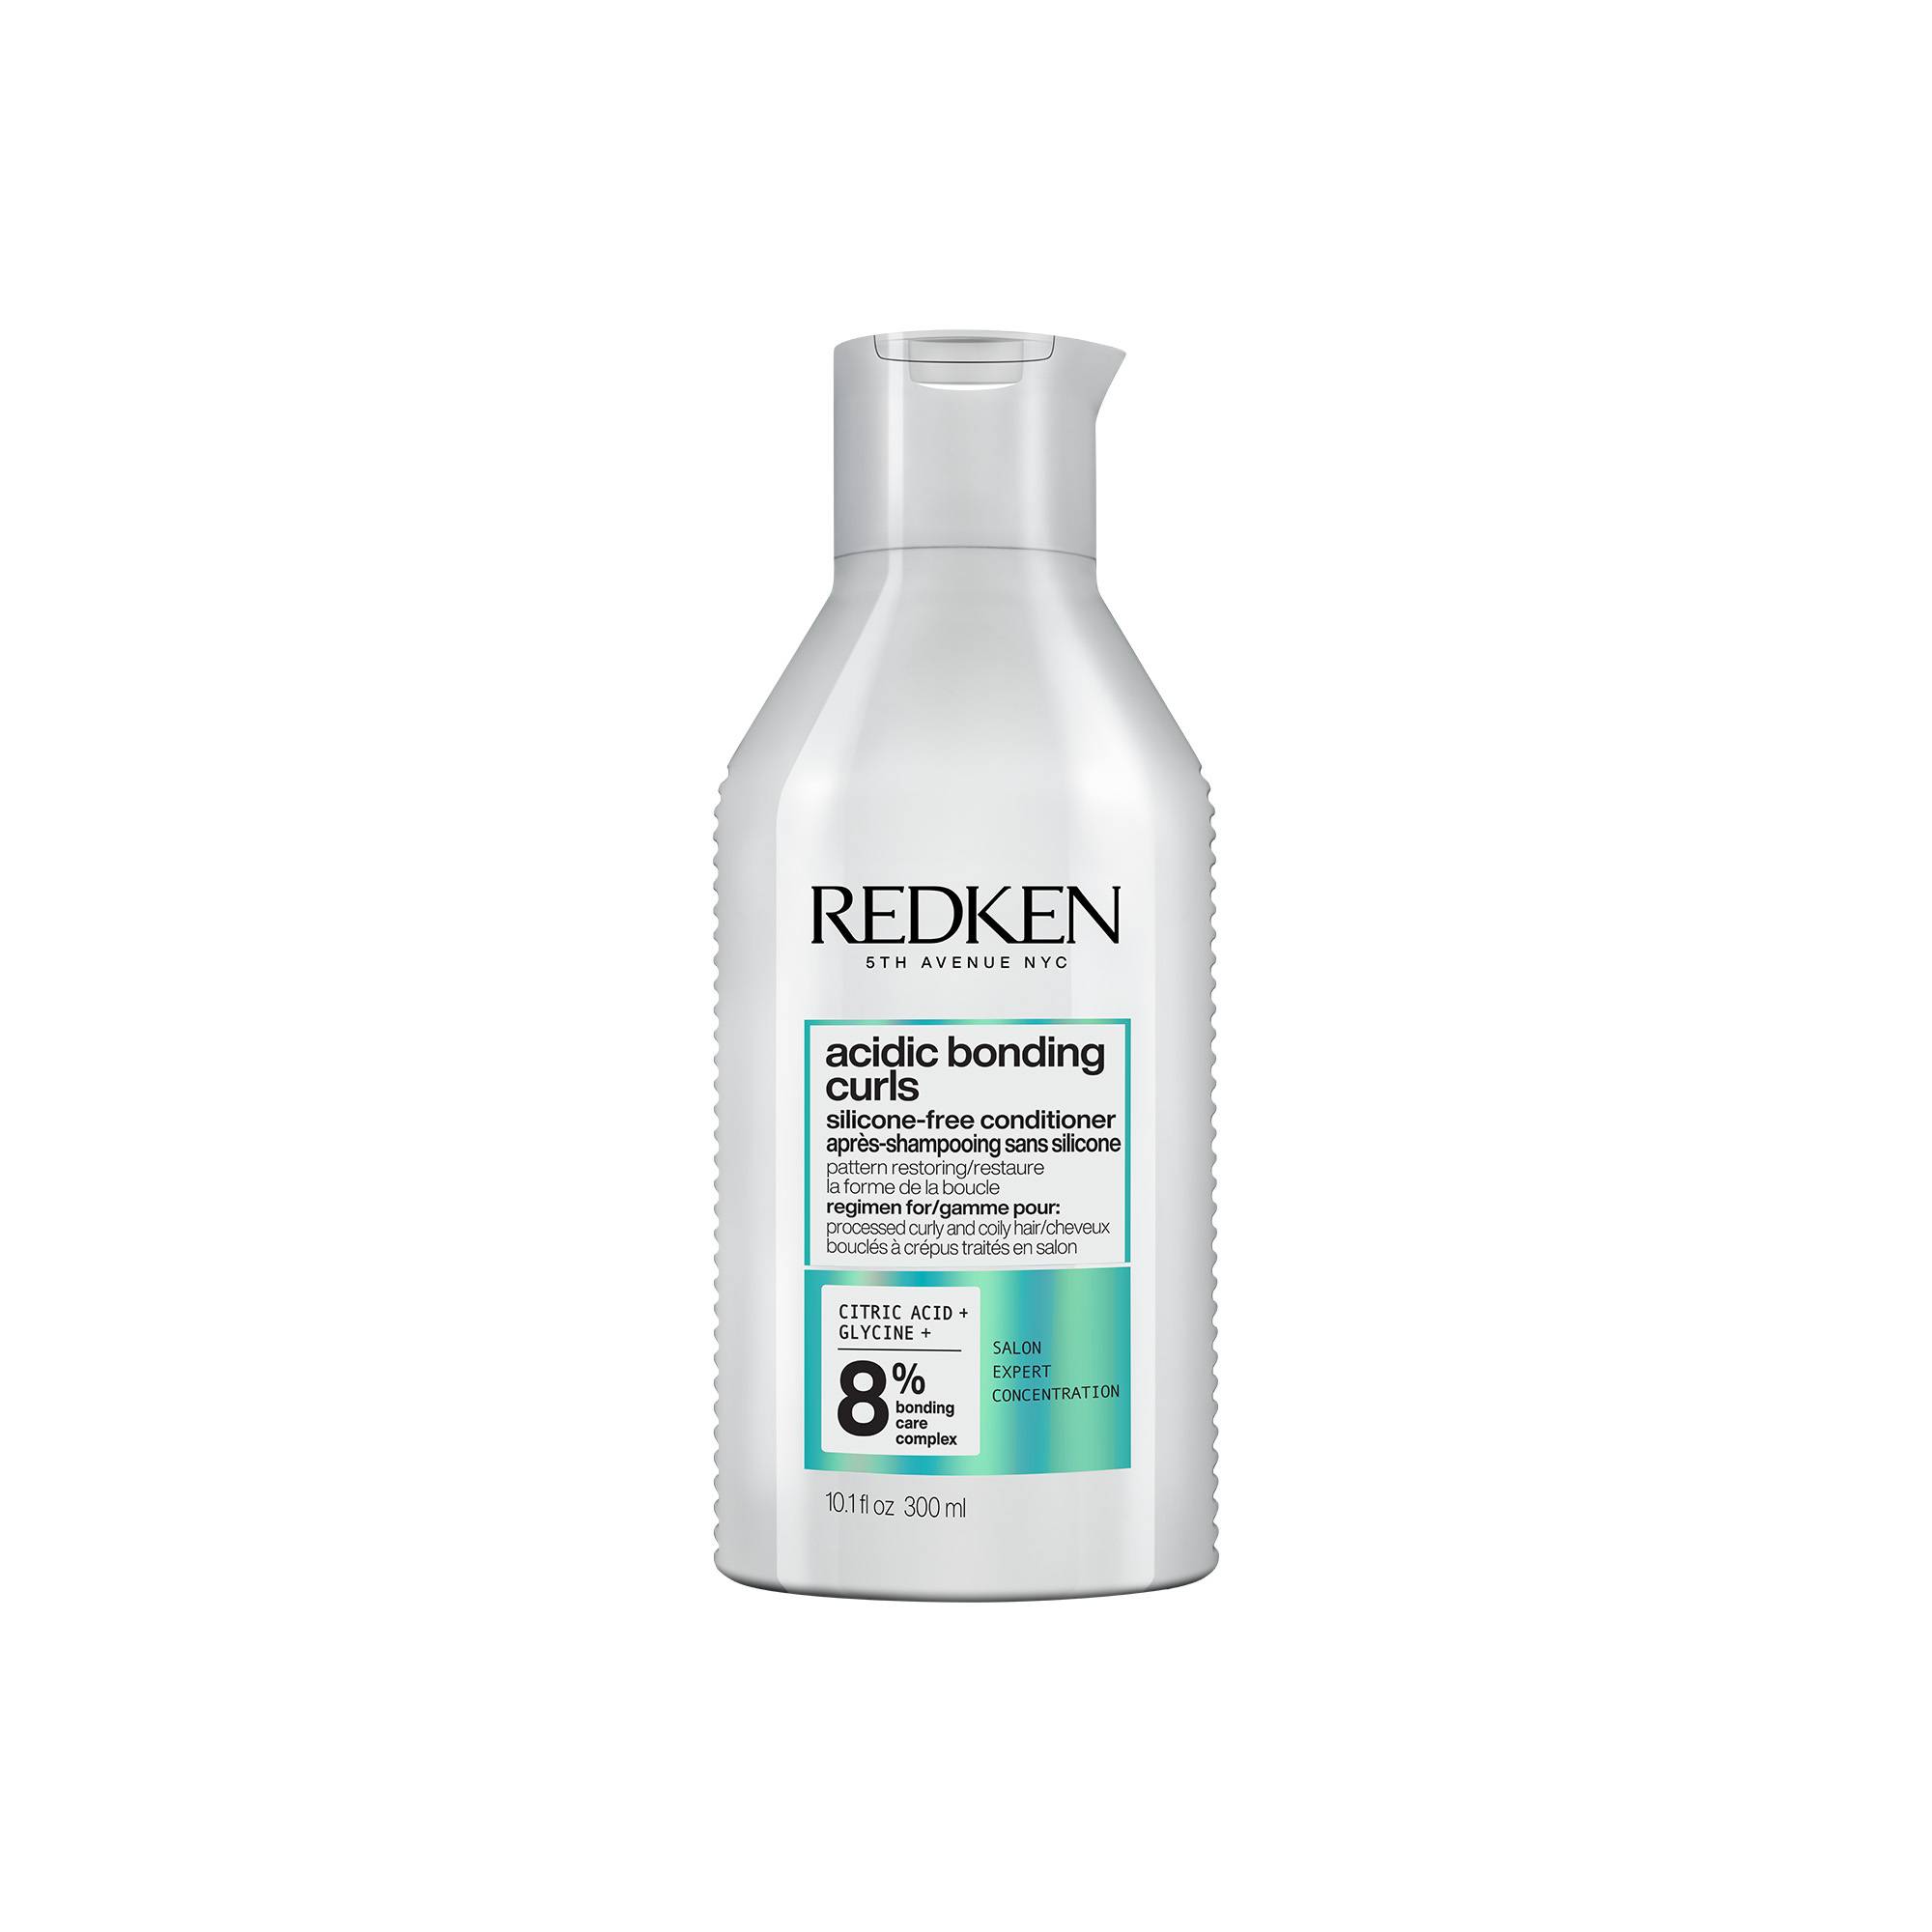 Après-Shampoing Acidic Bonding Curls de la marque Redken Contenance 300ml - 1